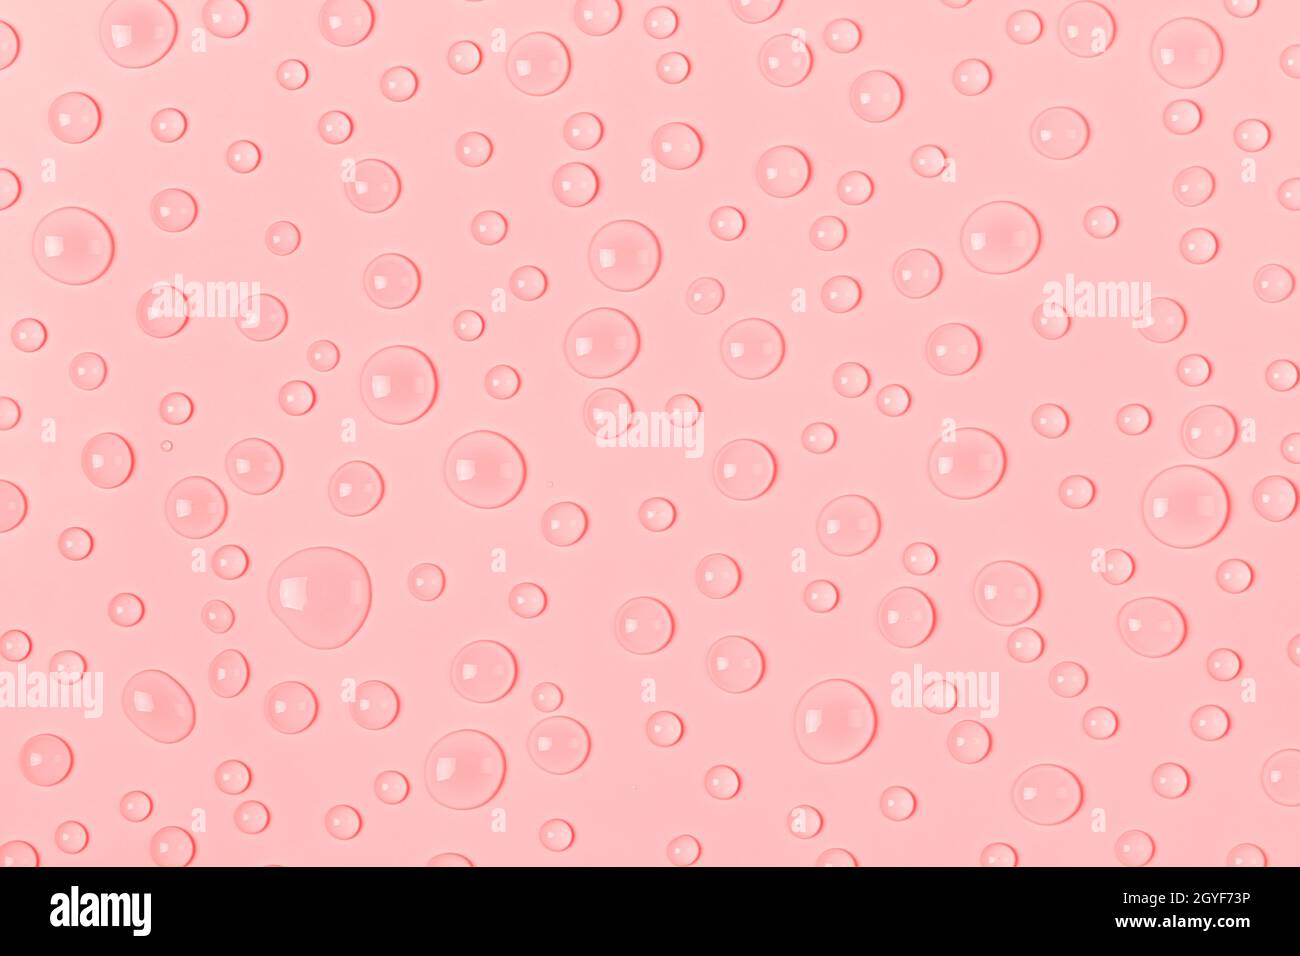 Gocce d'acqua su sfondo rosa pastello. Acqua texture close up. Sfondo vetro coperto da gocce d'acqua. Bolle d'acqua Foto Stock